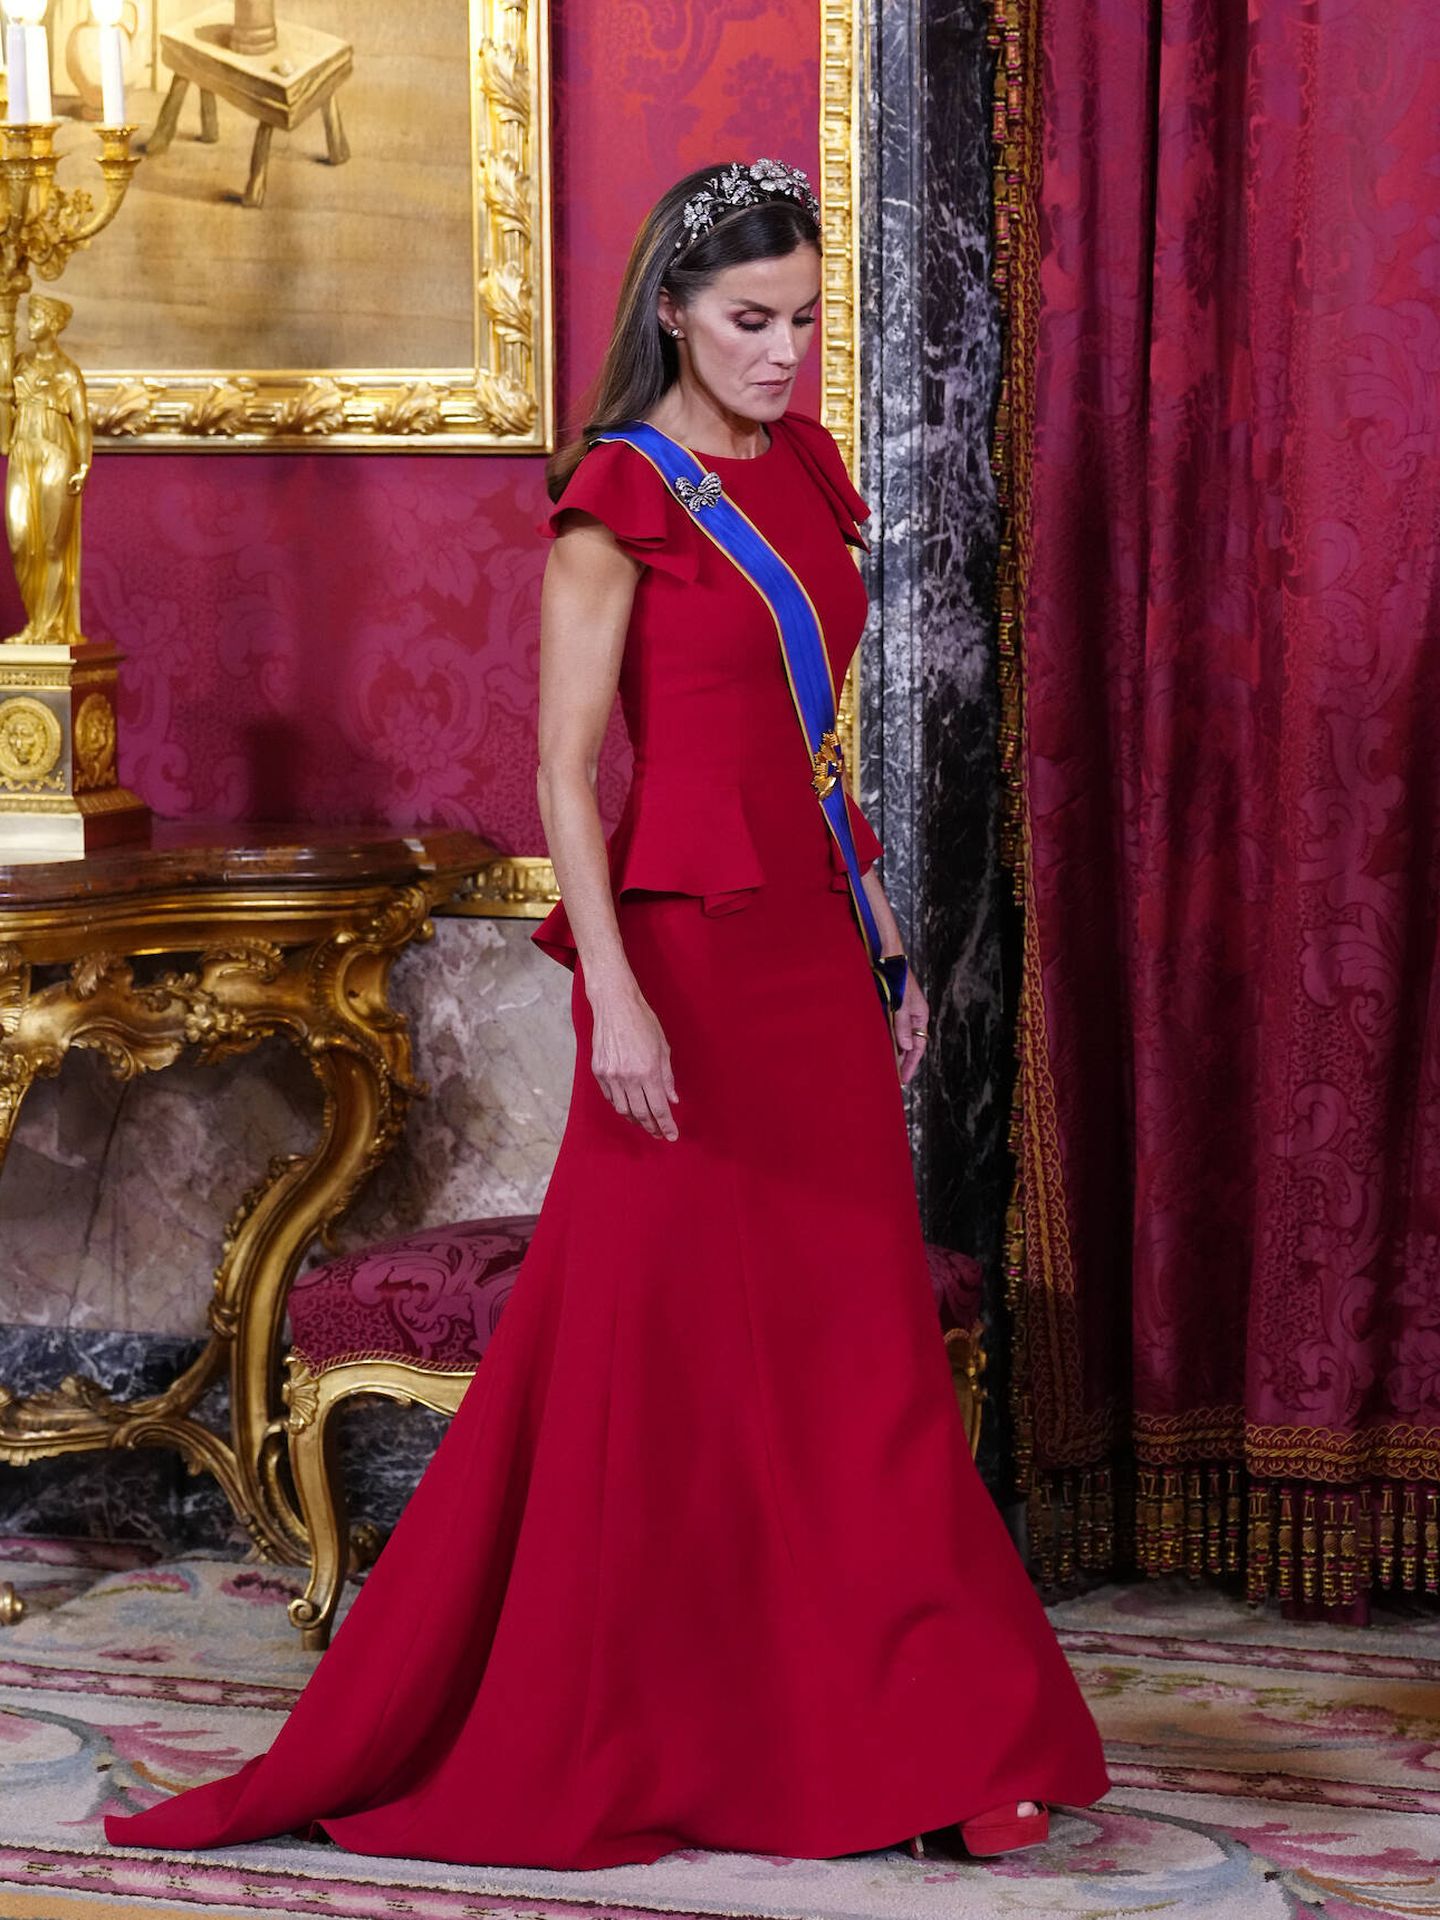 La reina Letizia, con vestido rojo de gala. (LP)